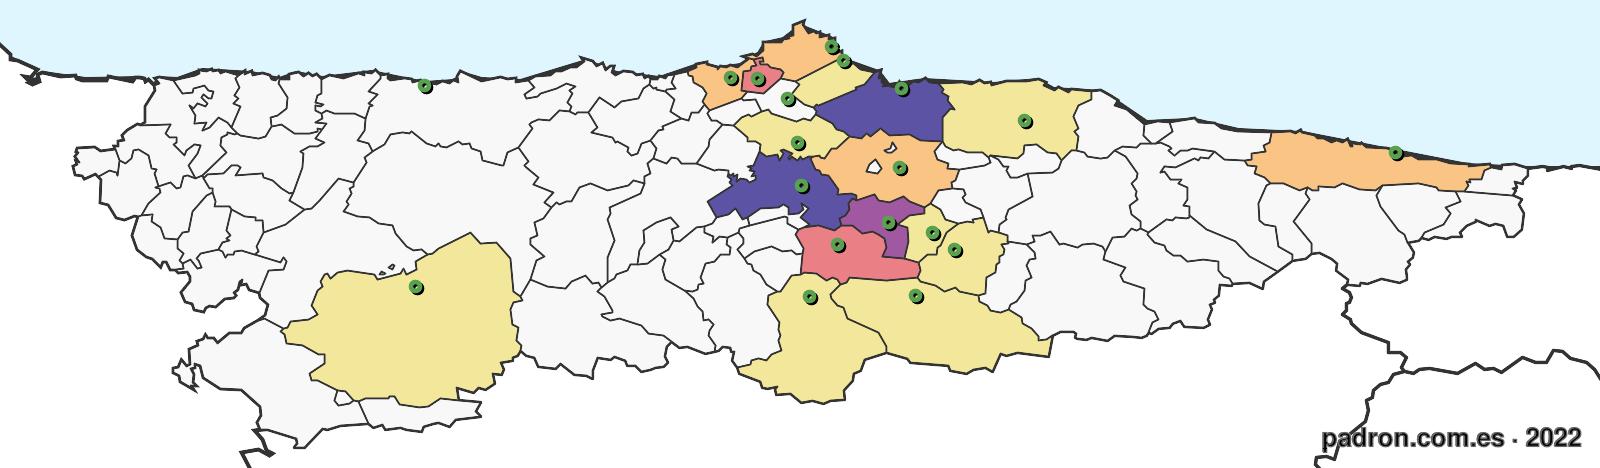 argelinos en asturias.